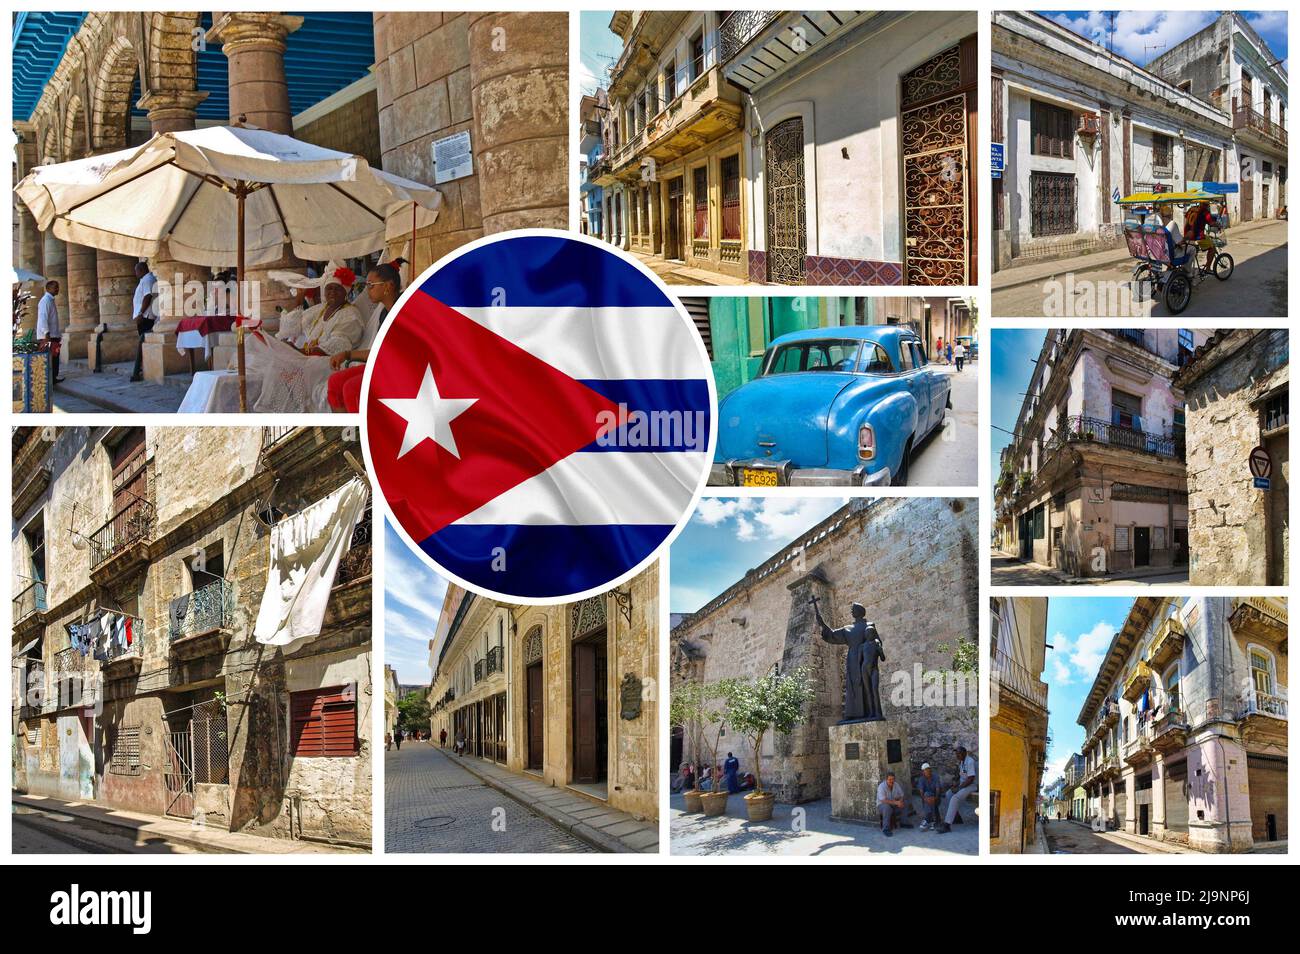 Die andere Seite von Havanna (Kuba), der alte Teil der Stadt, der echte und nicht-touristische Teil, in dem gewöhnliche Menschen leben. Stockfoto